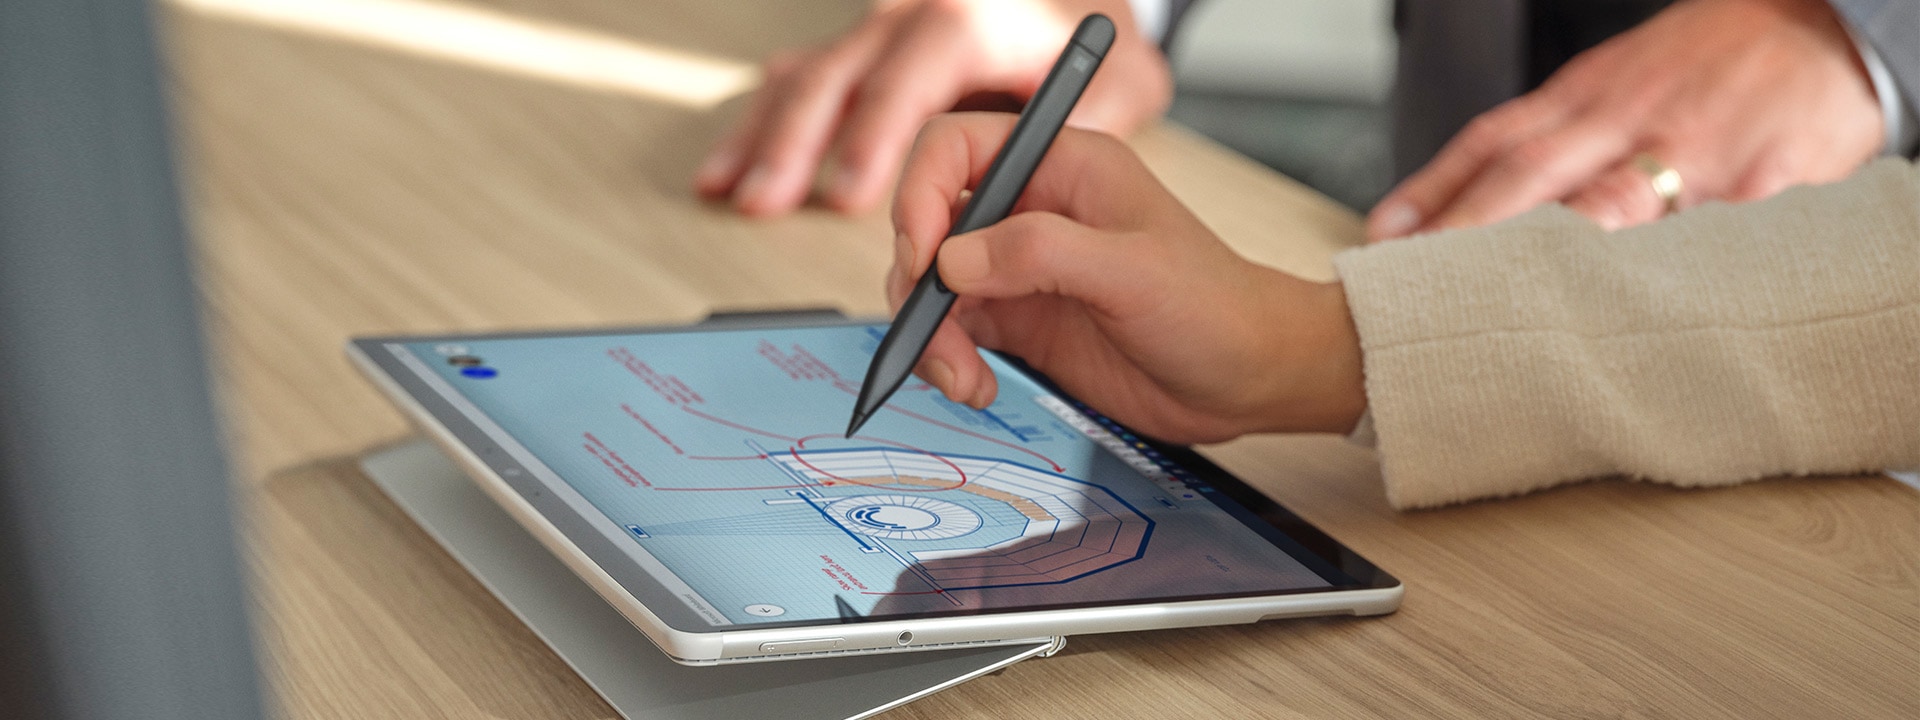 有人的手在 Surface Pro 8 的螢幕上使用 Surface 超薄手寫筆 2